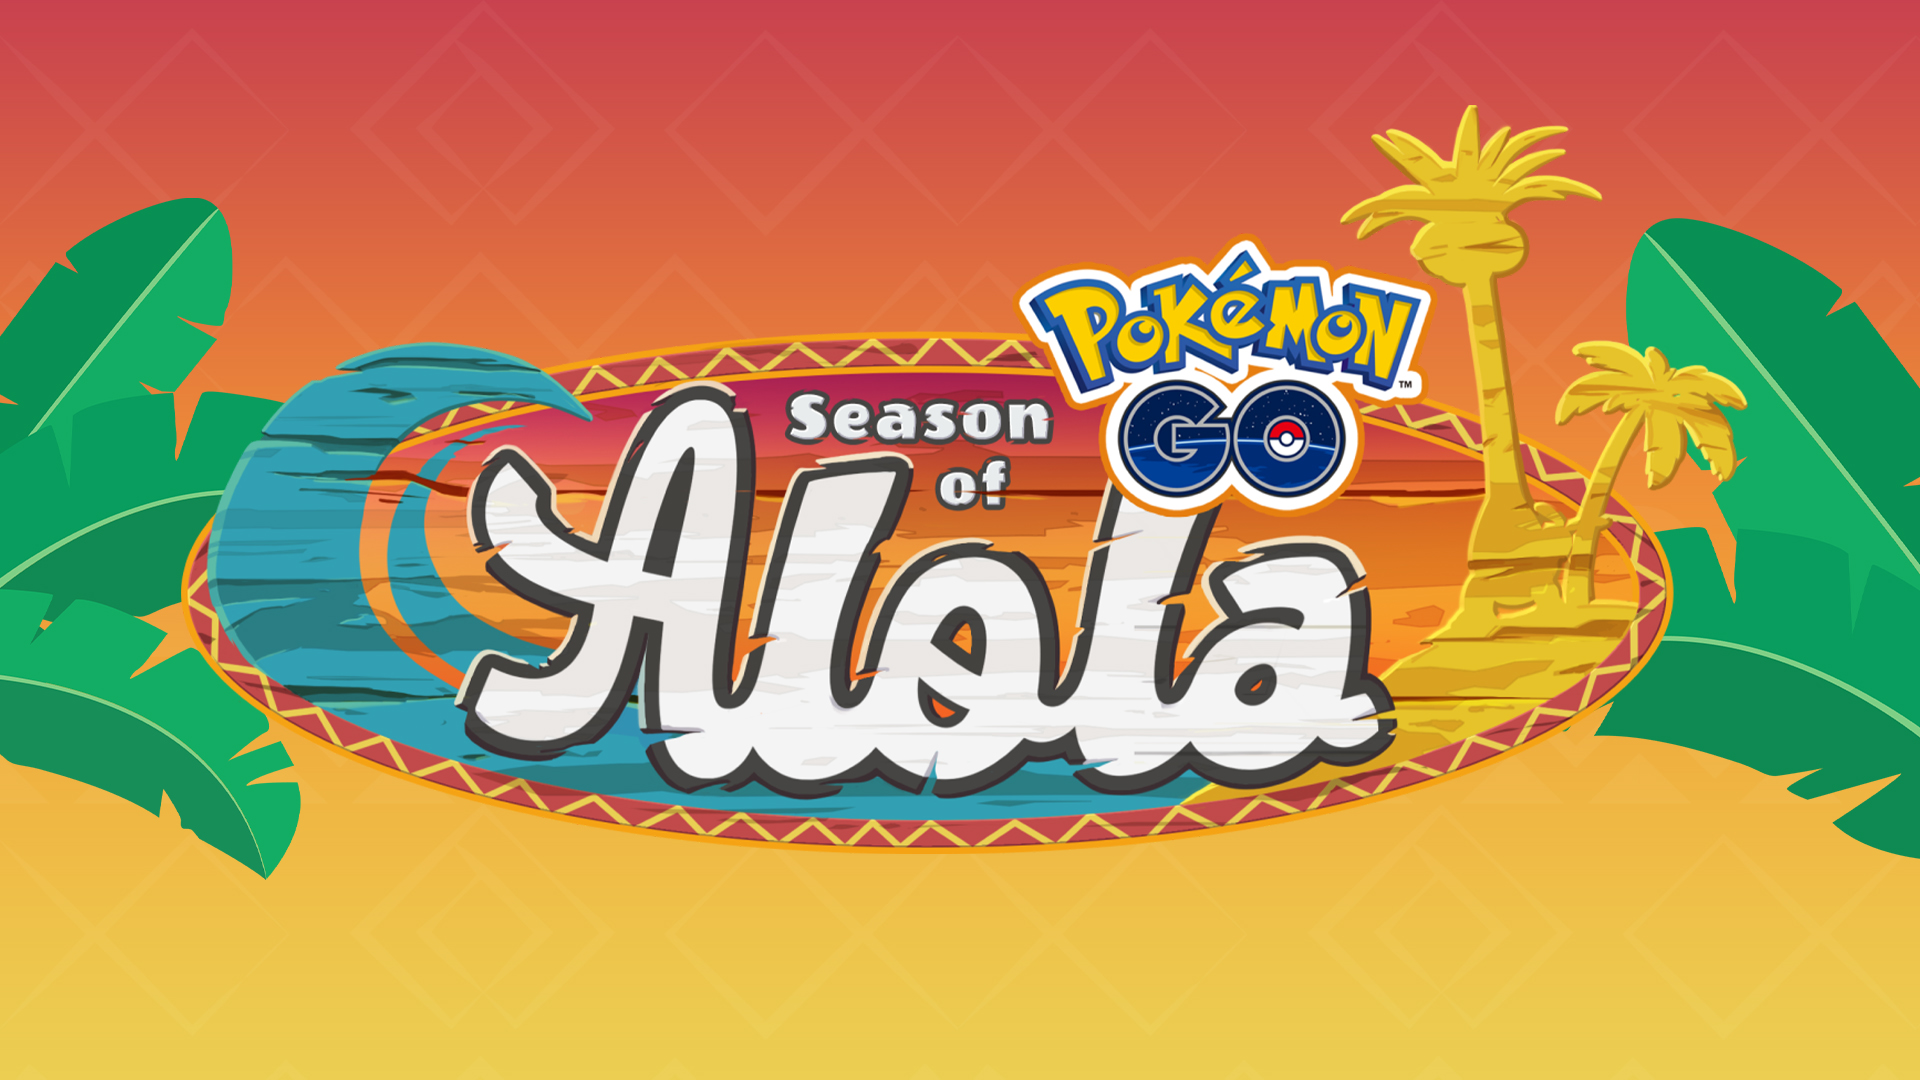 Welcome to the Season of Alola in Pokémon GO